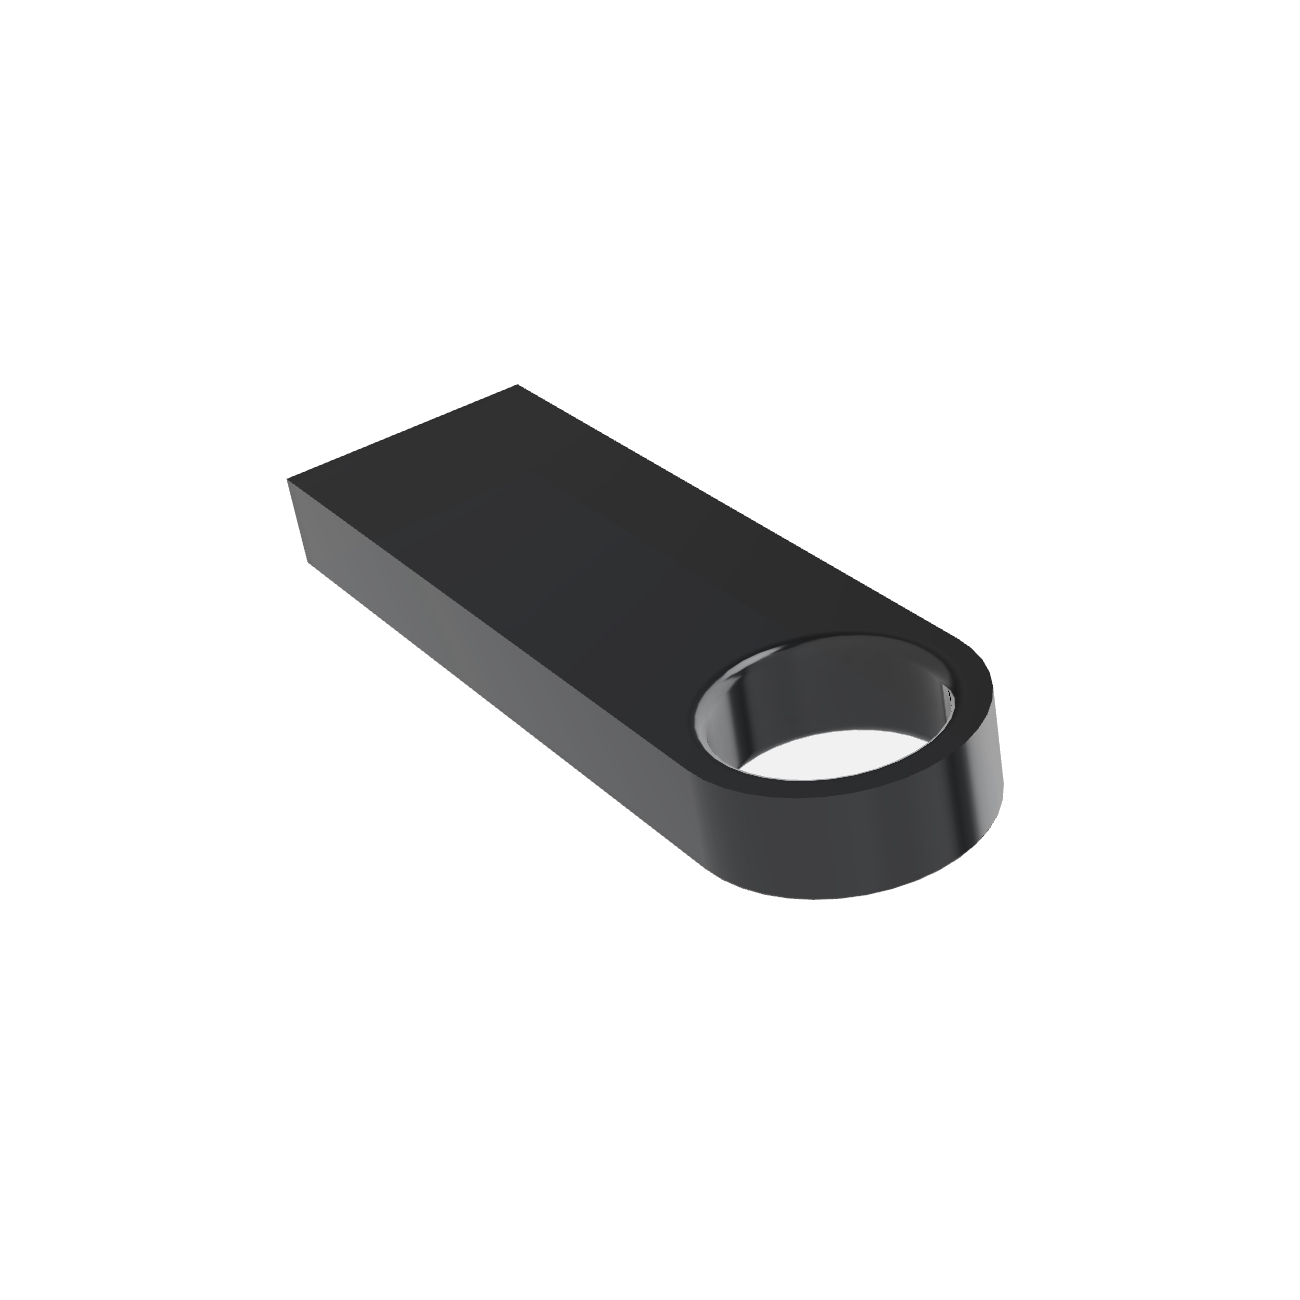 USB GERMANY ® SE09 USB-Stick GB) (Schwarz, 64